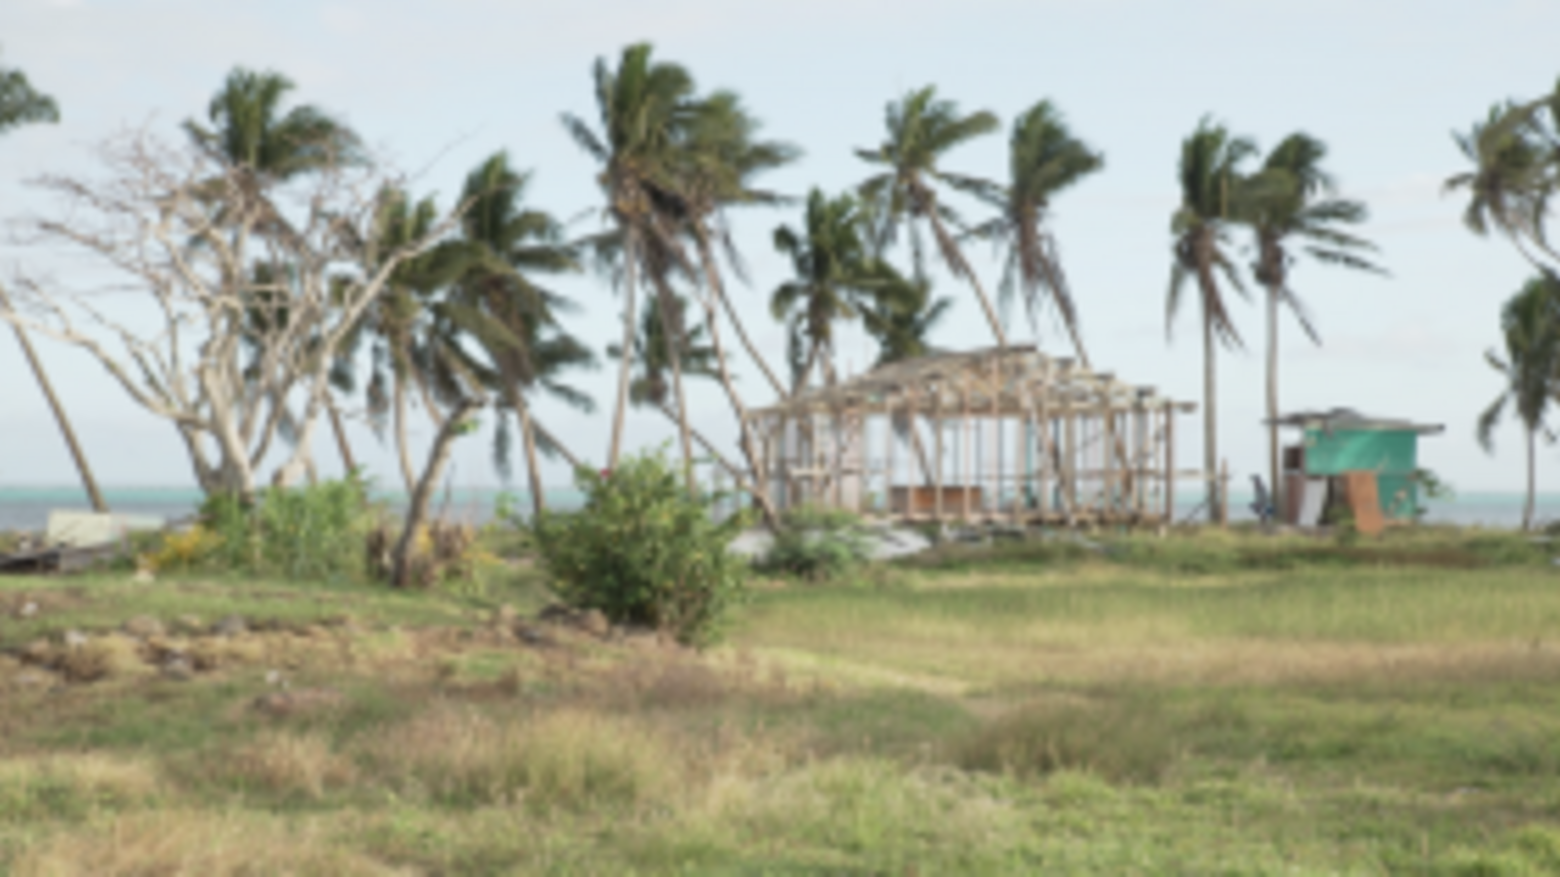 Zerstörtes Dorf in Fidschi nach Zyklon Winston